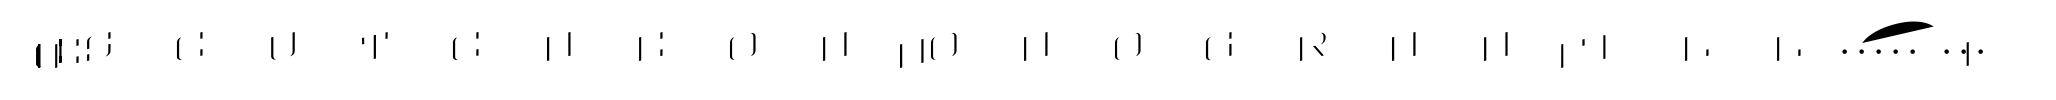 MFC Escutcheon Monogram Fill (25000 Impressions) image